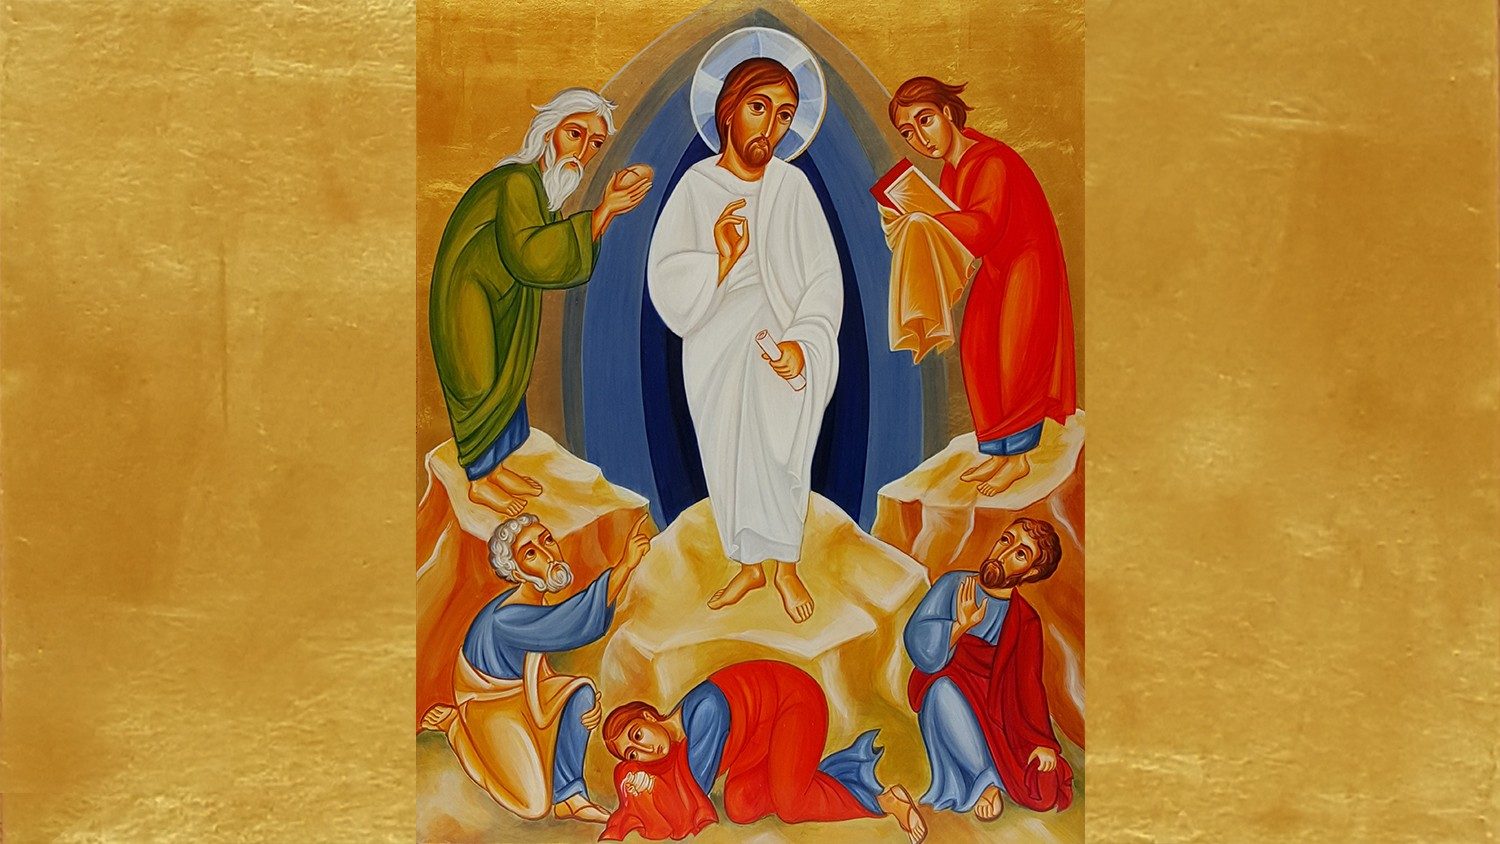 Resultado de imagen para imagen de la transfiguracion en el vaticano